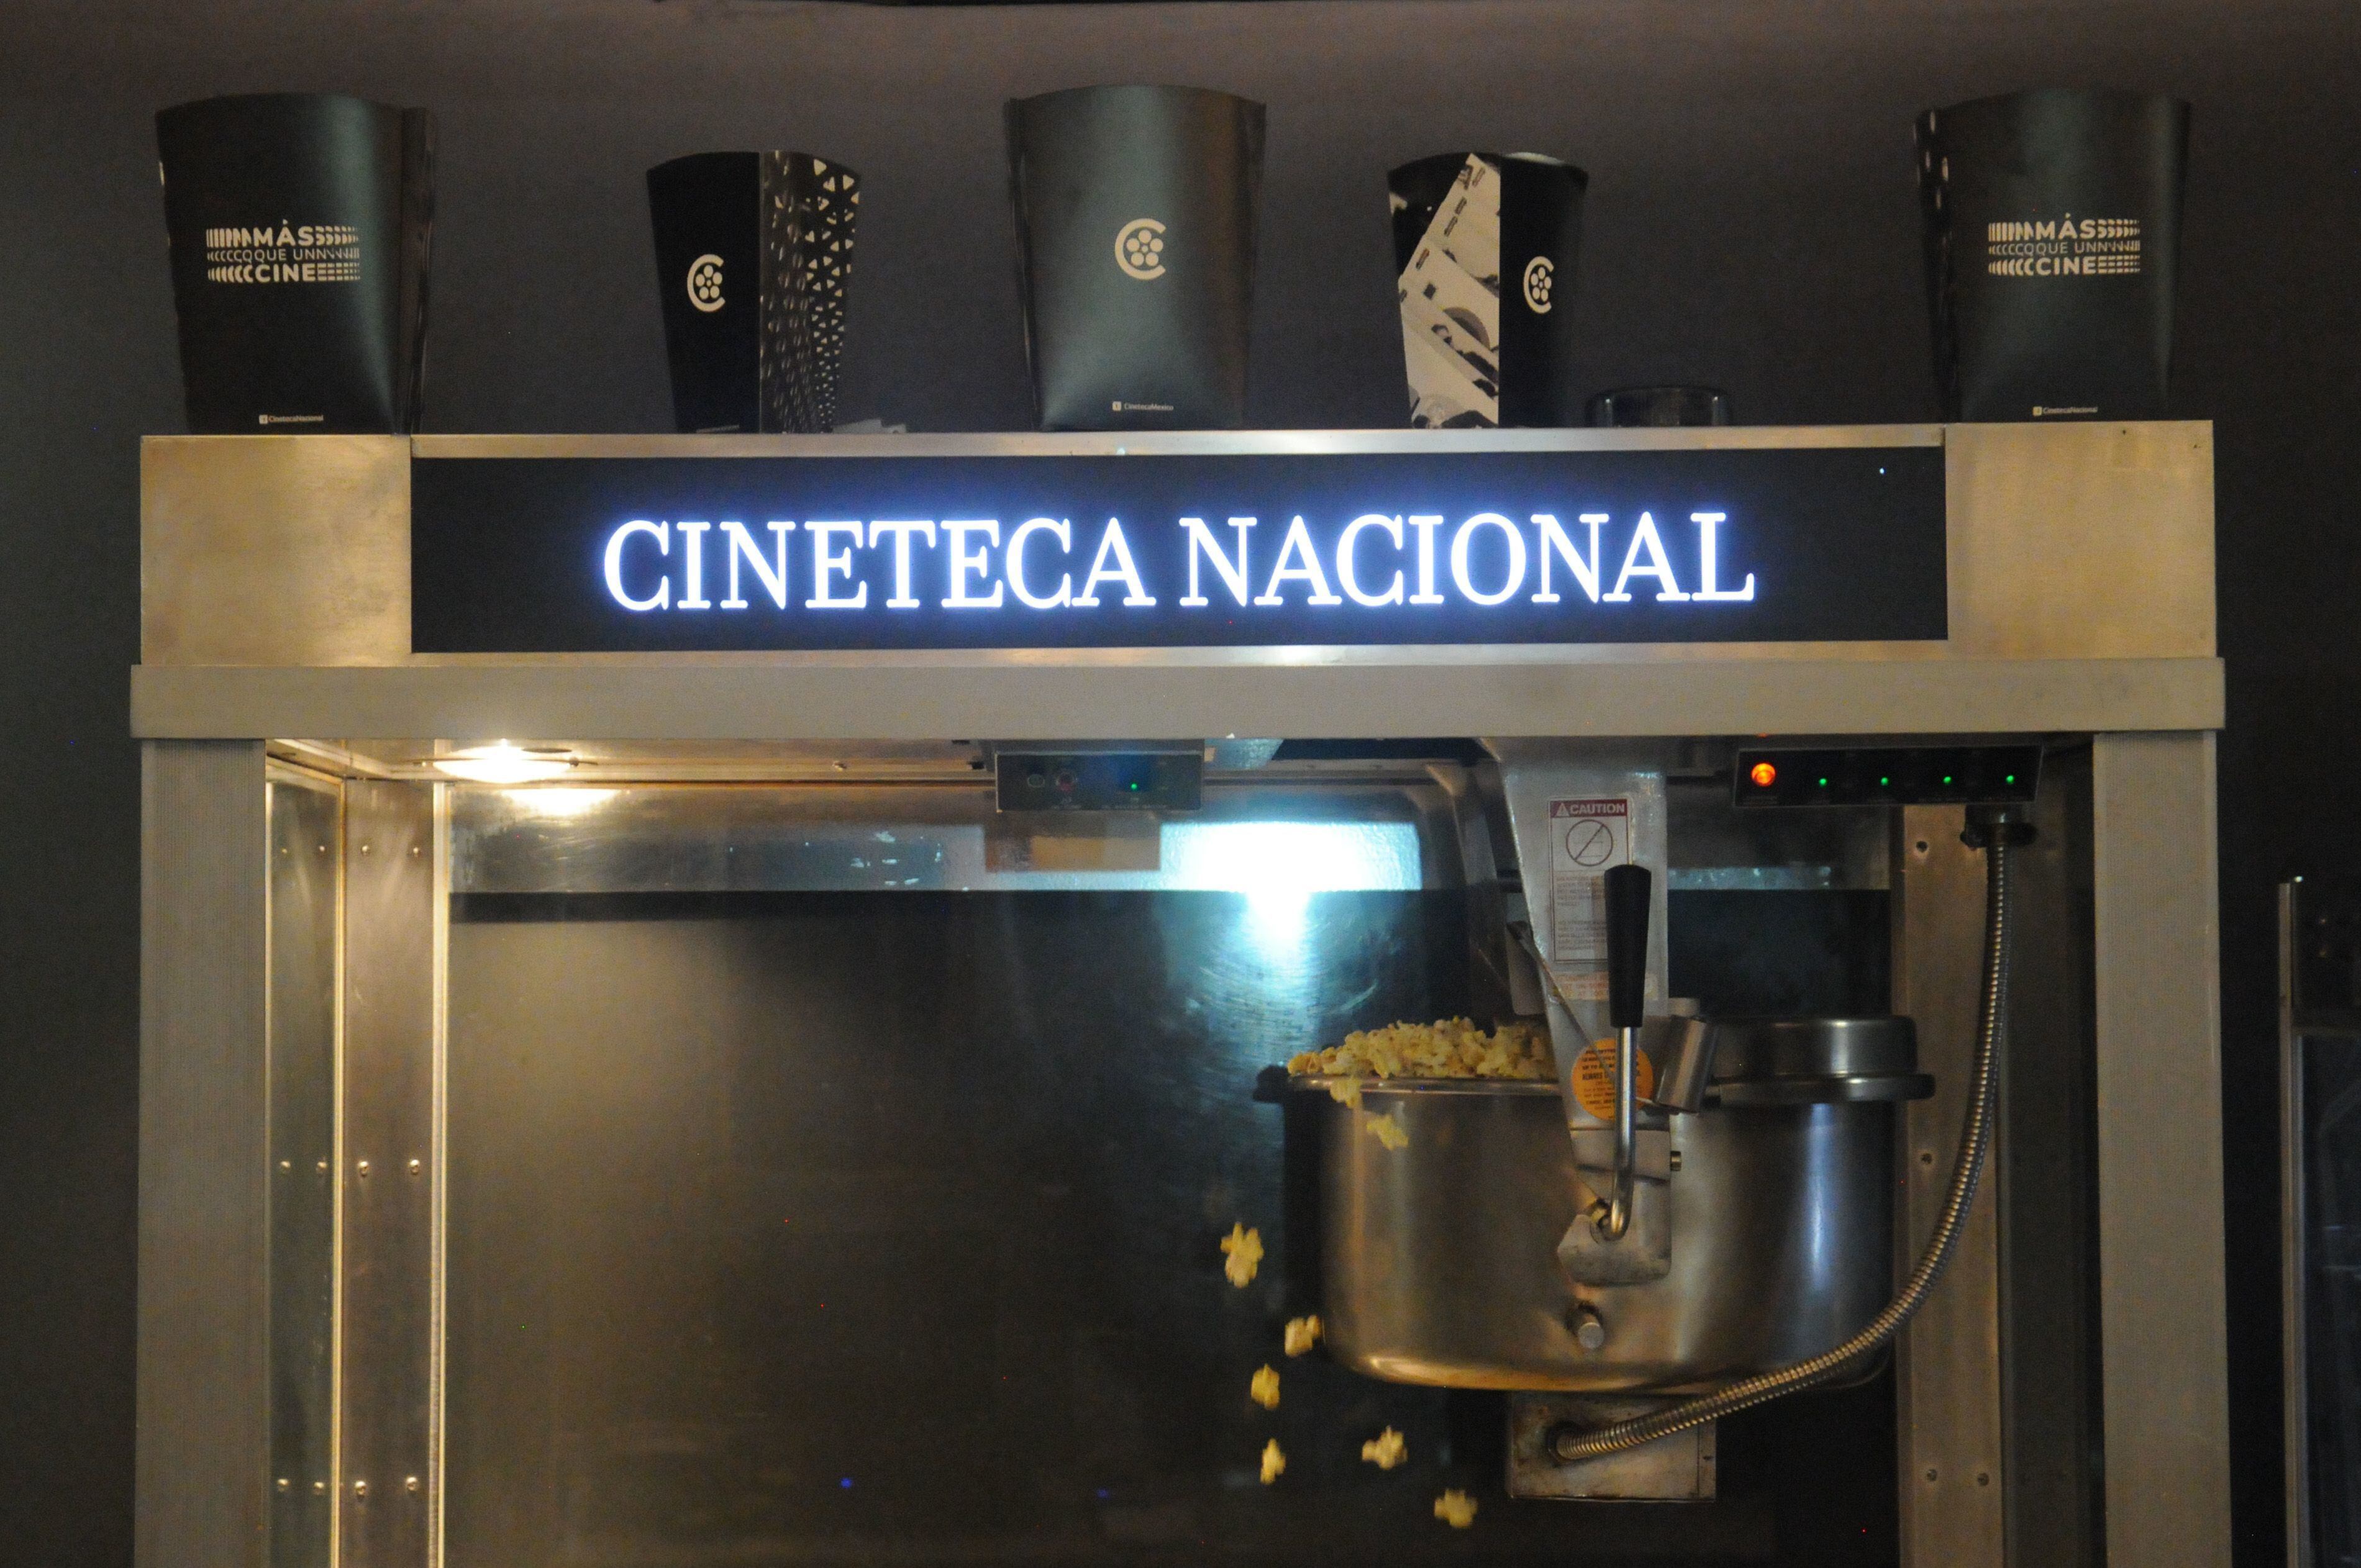 La Cineteca Nacional ha conseguido expandirse con otros recintos. (Foto: Cuartoscuro)